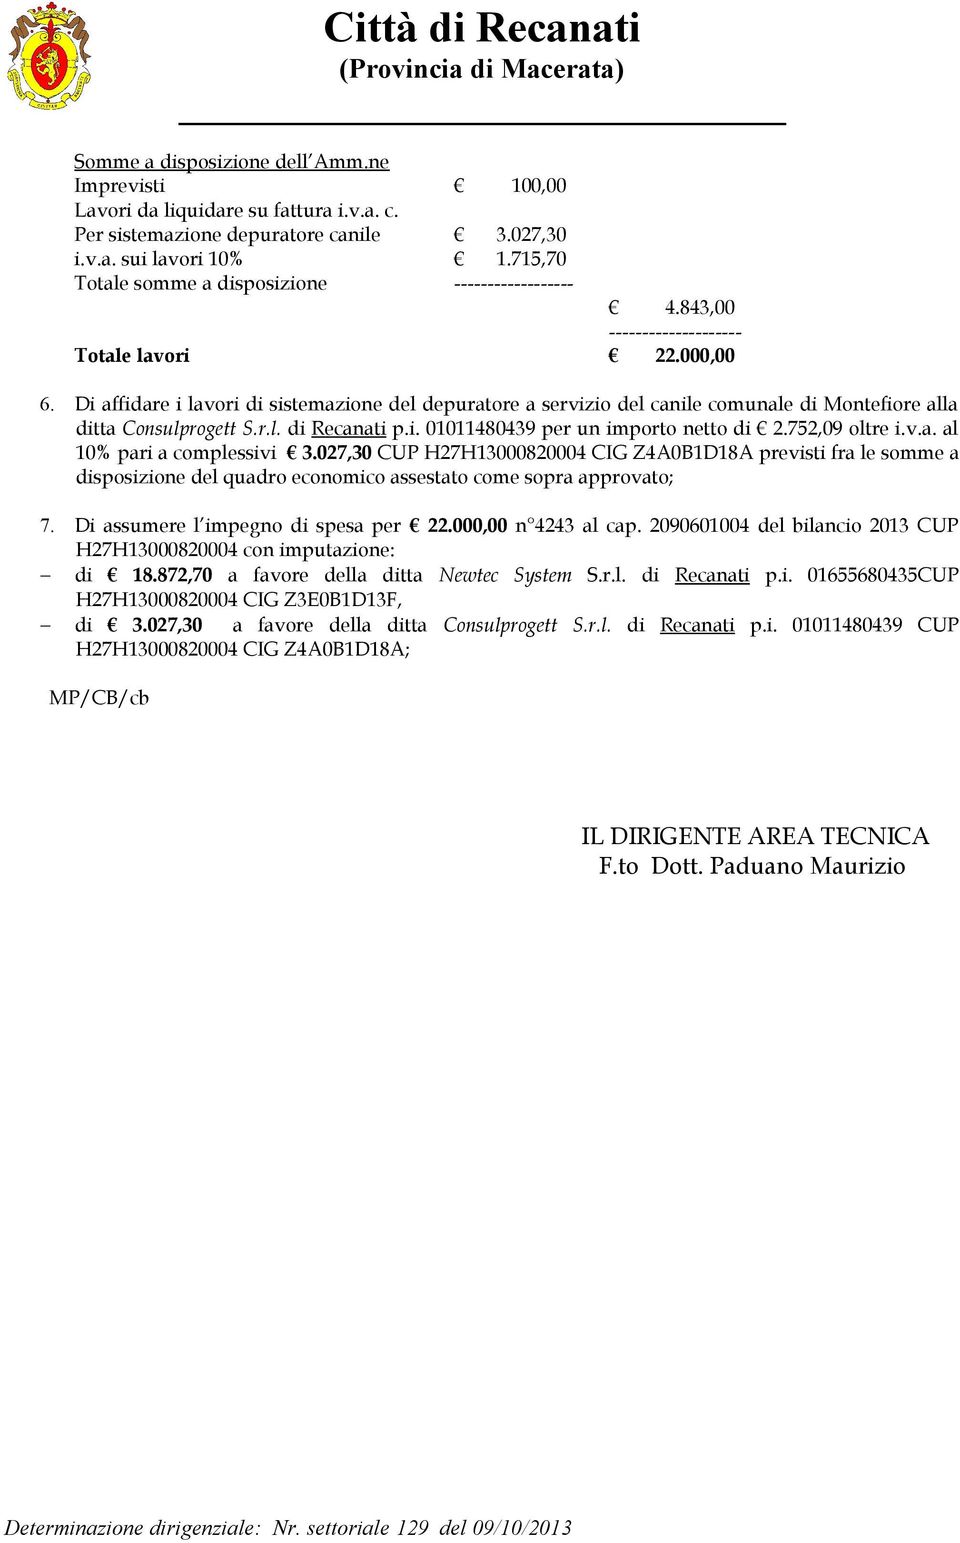 Di affidare i lavori di sistemazione del depuratore a servizio del canile comunale di Montefiore alla ditta Consulprogett S.r.l. di Recanati p.i. 01011480439 per un importo netto di 2.752,09 oltre i.